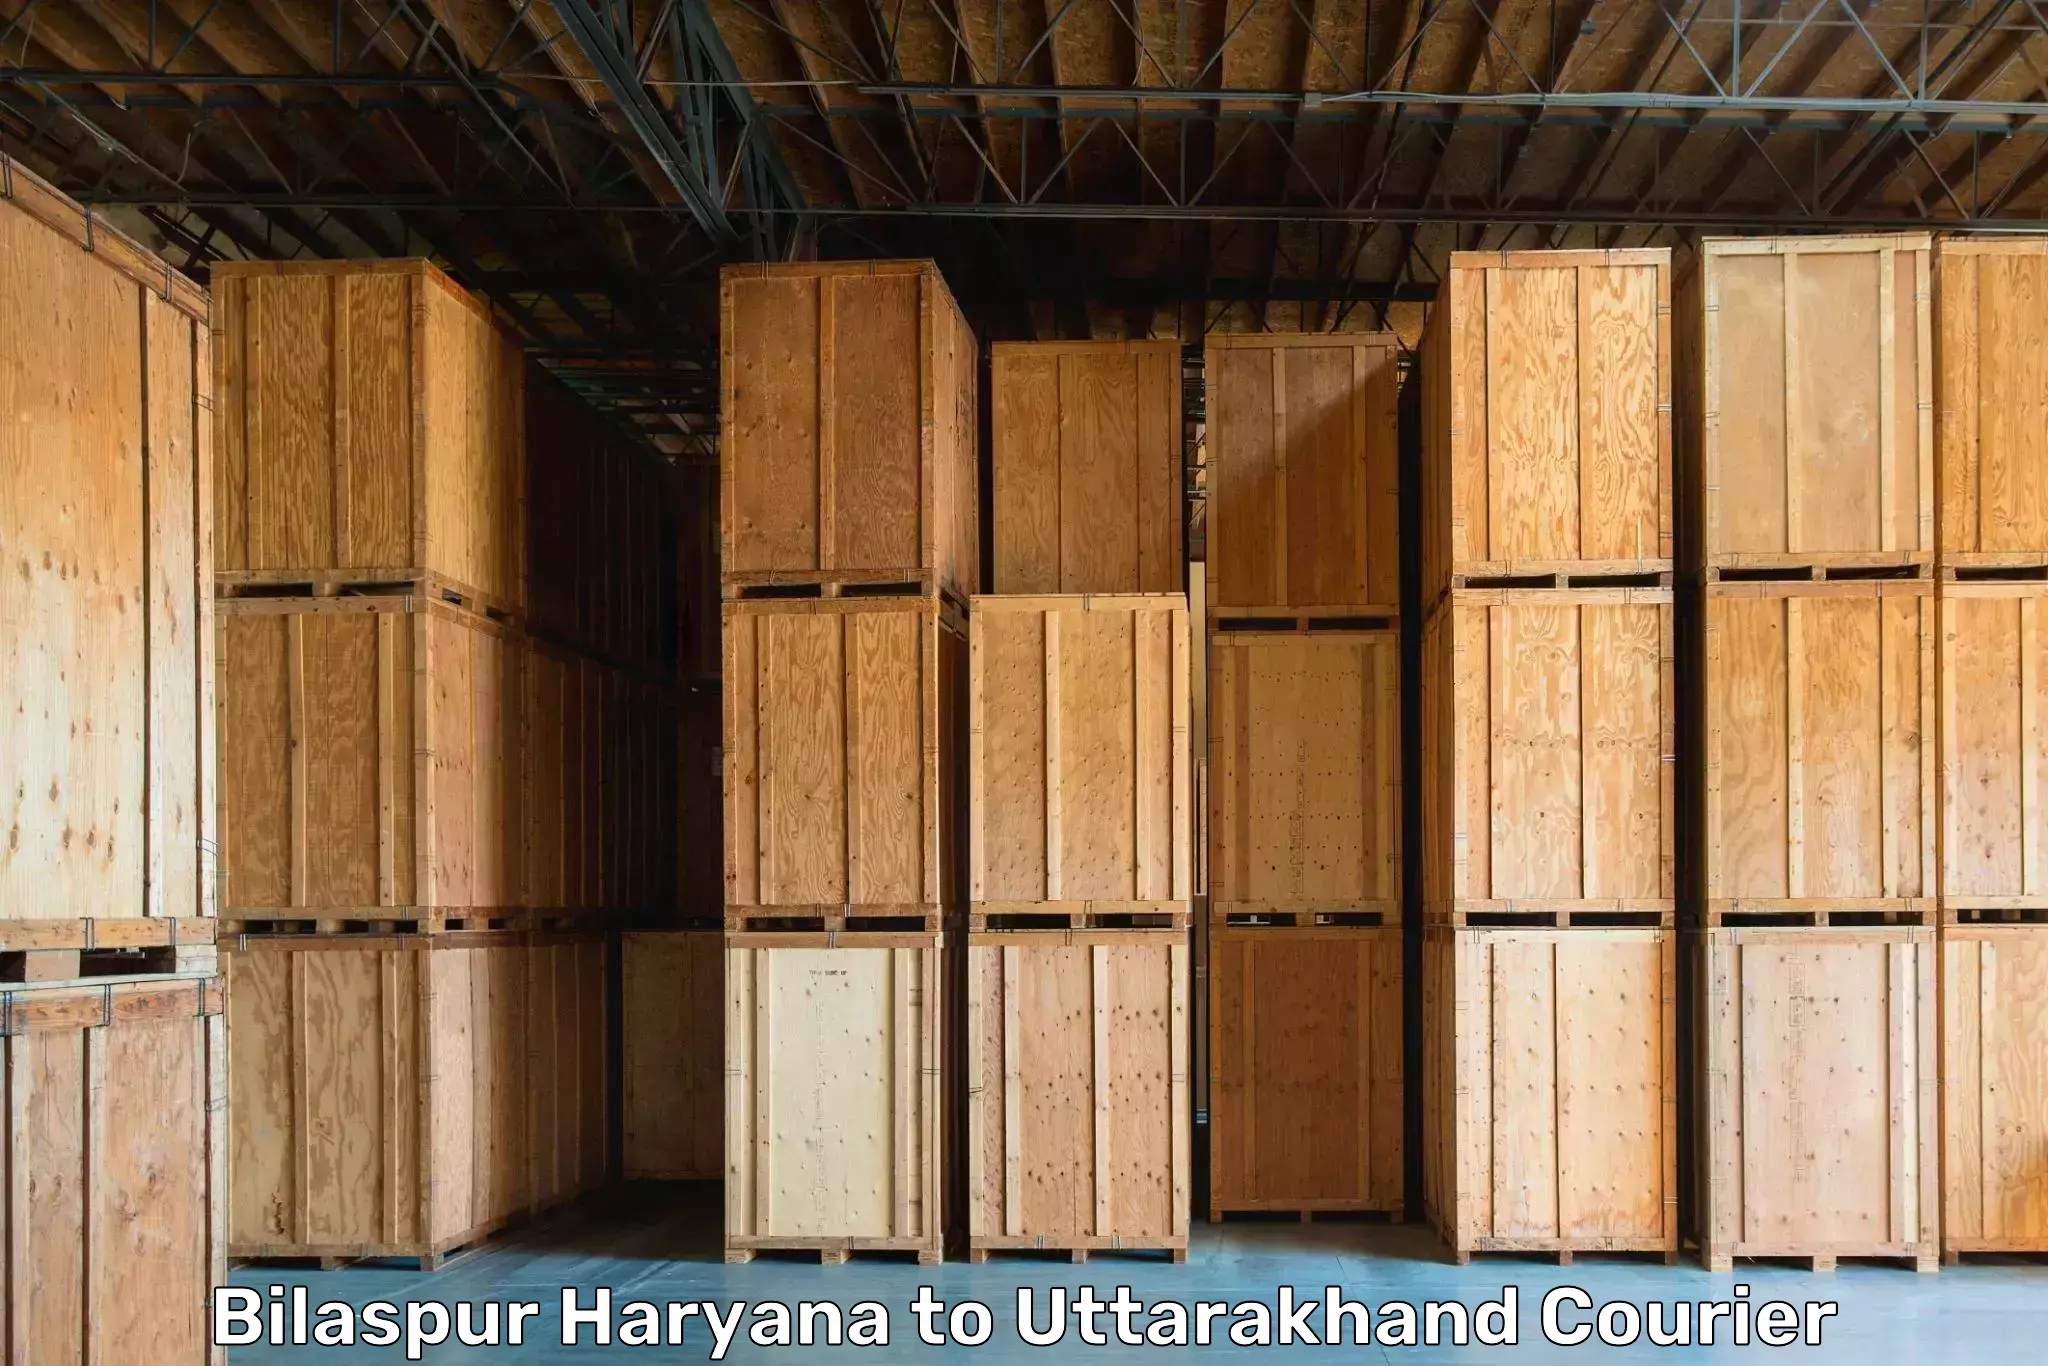 Seamless moving process Bilaspur Haryana to Rudrapur